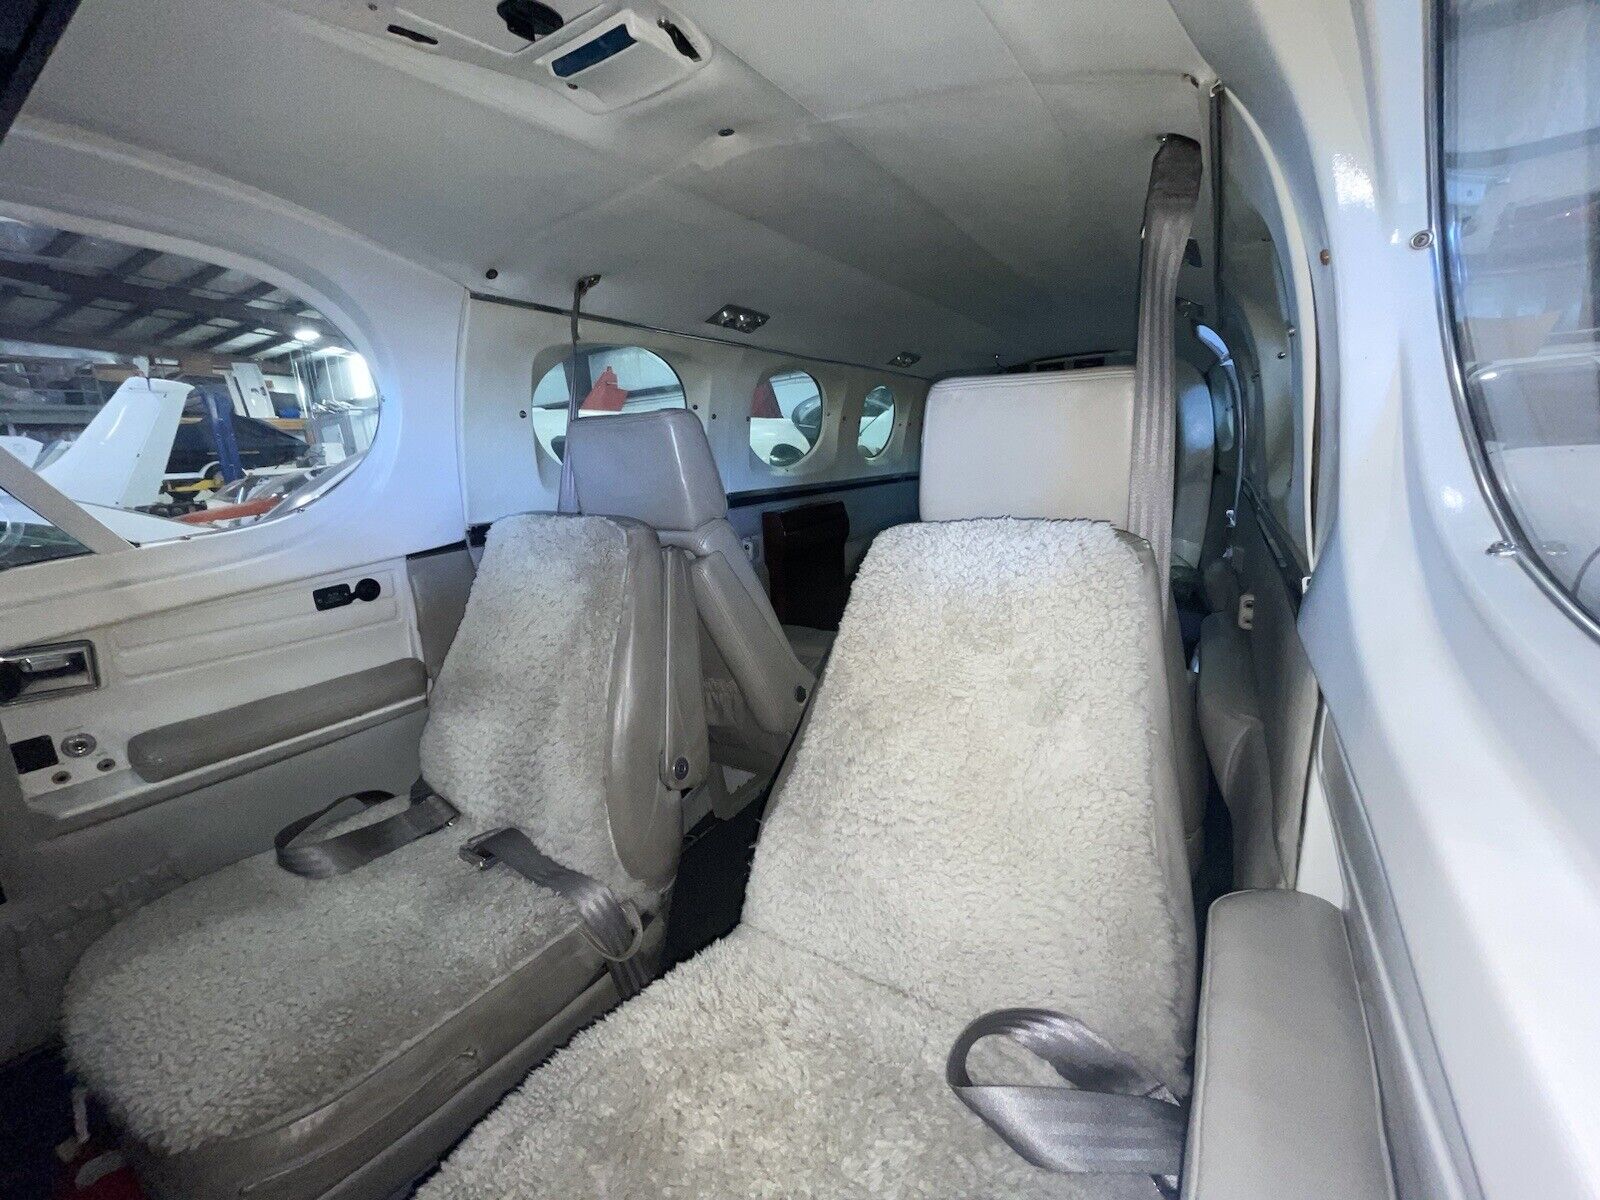 1979 Cessna 340A Interior Grey Seats 5 Carpet Panels Trim Plastics Table Lights